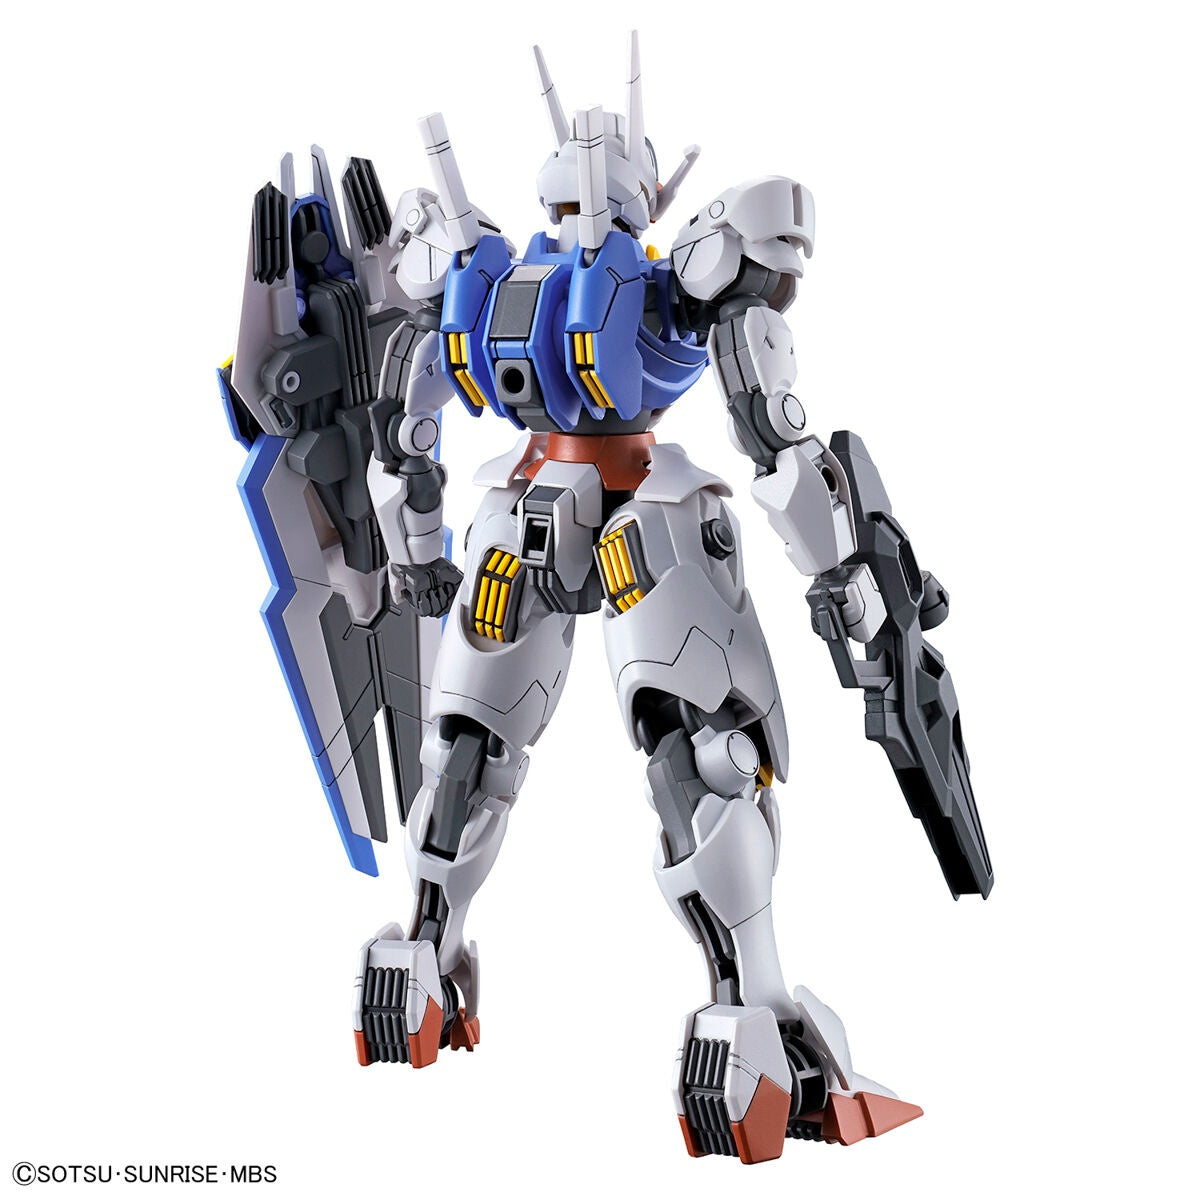 HG 1/144 Gundam Aerial Gunpla Kit